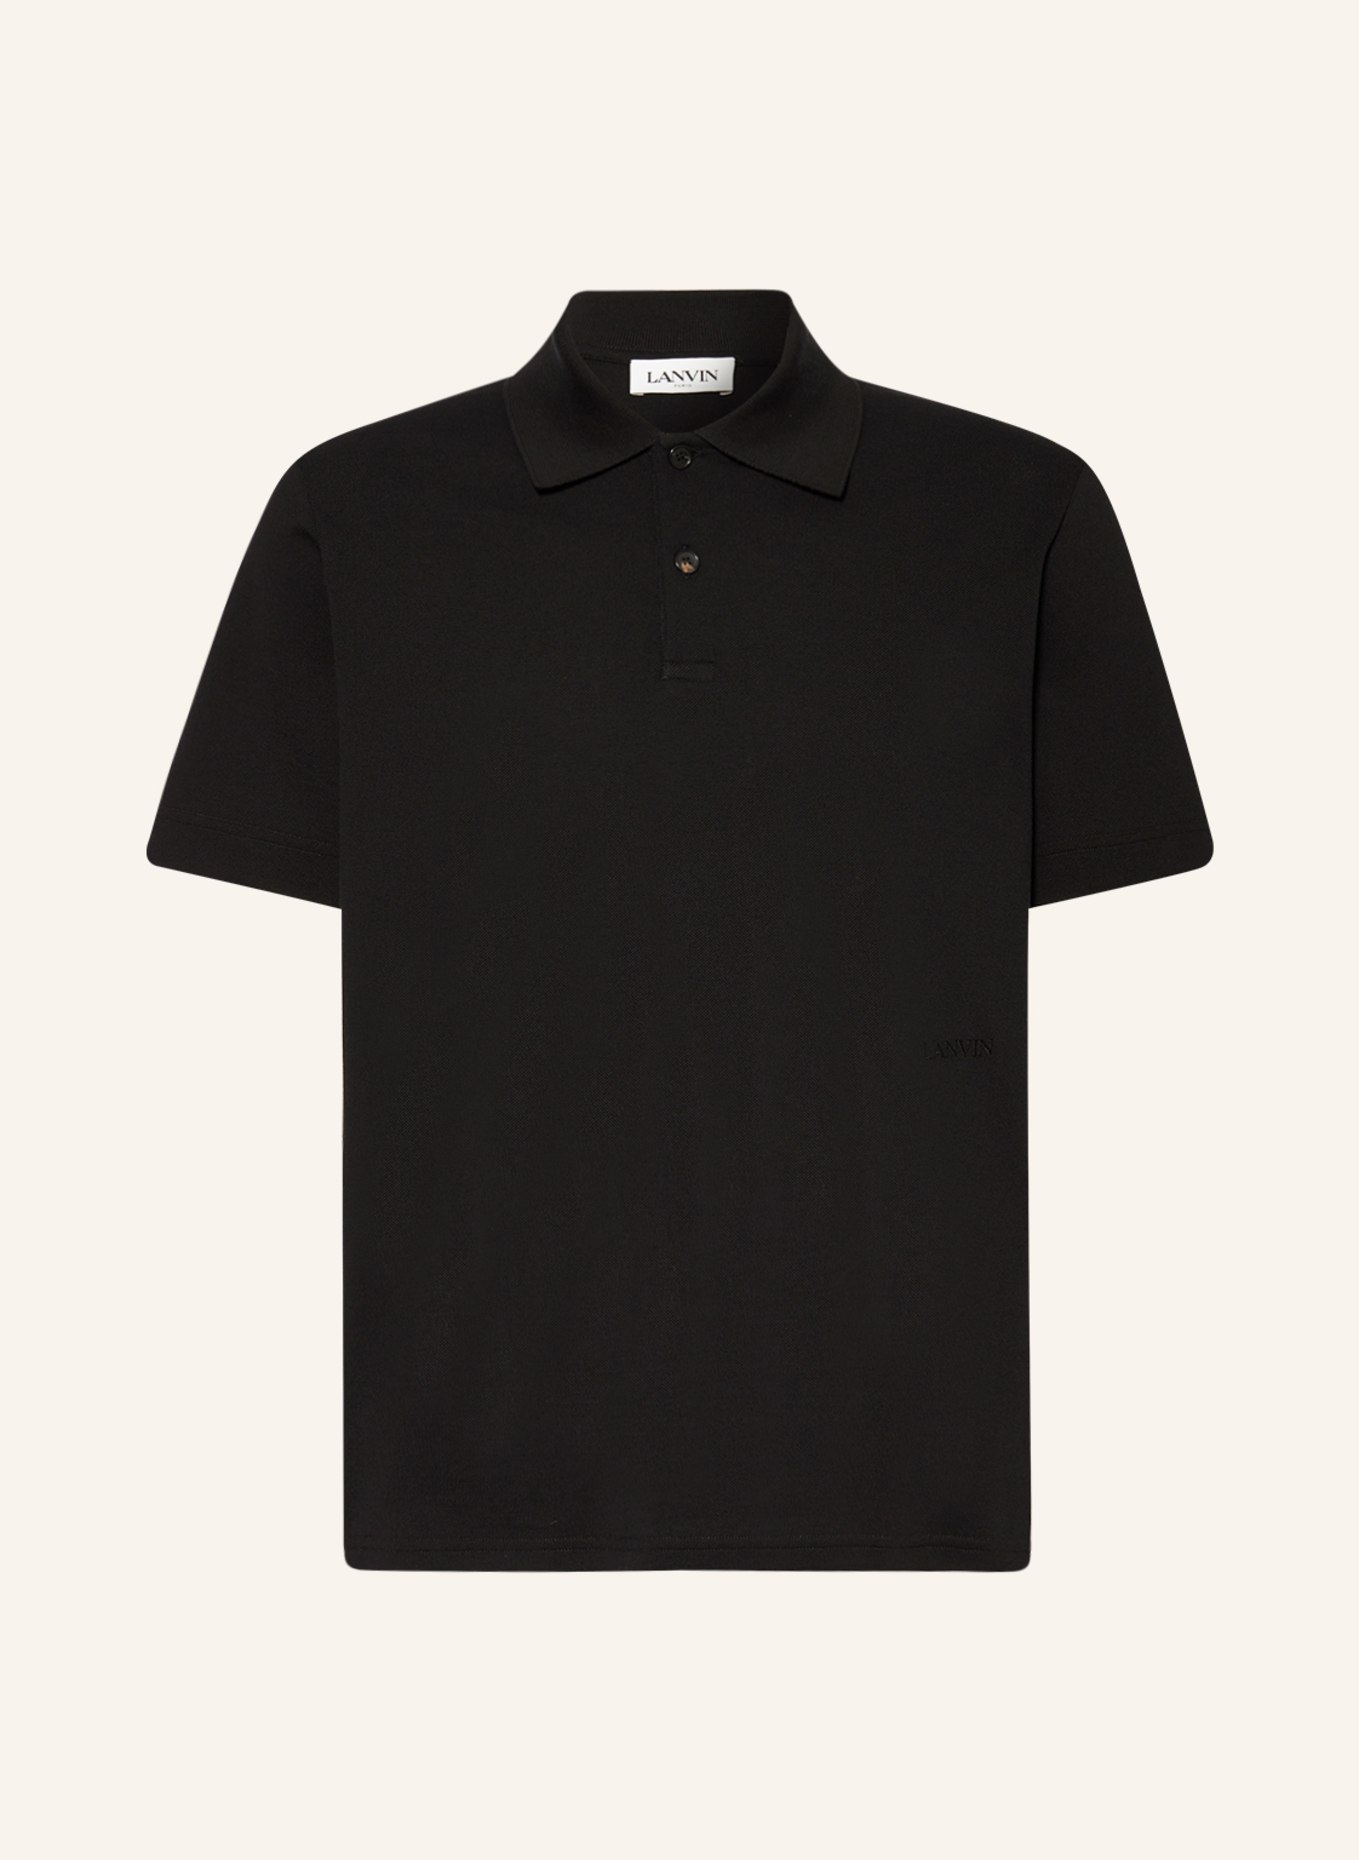 LANVIN Piqué polo shirt, Color: BLACK (Image 1)